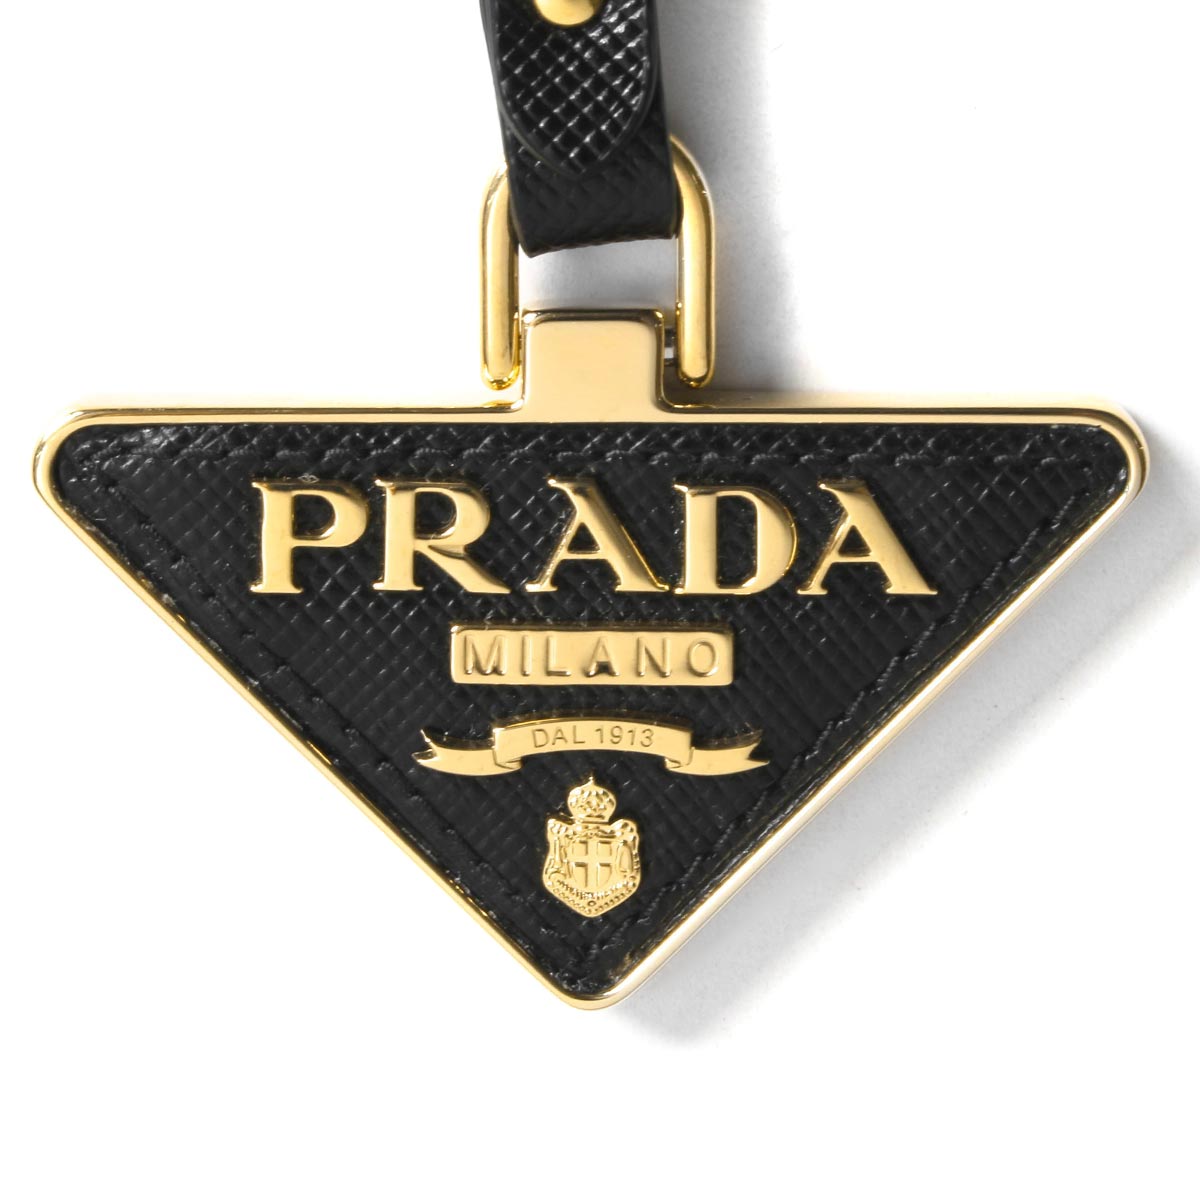 PRADA(プラダ) 三角 ロゴ キーホルダー - 小物